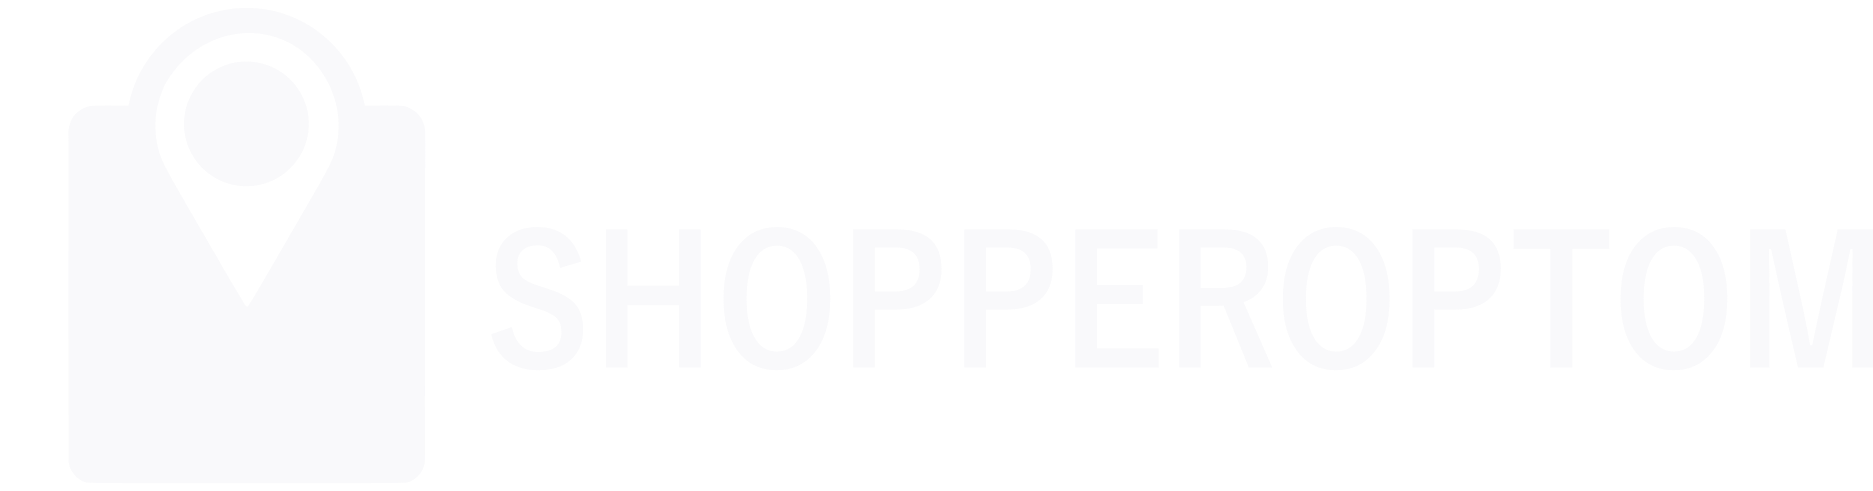 Shopperoptom | Шоппероптом